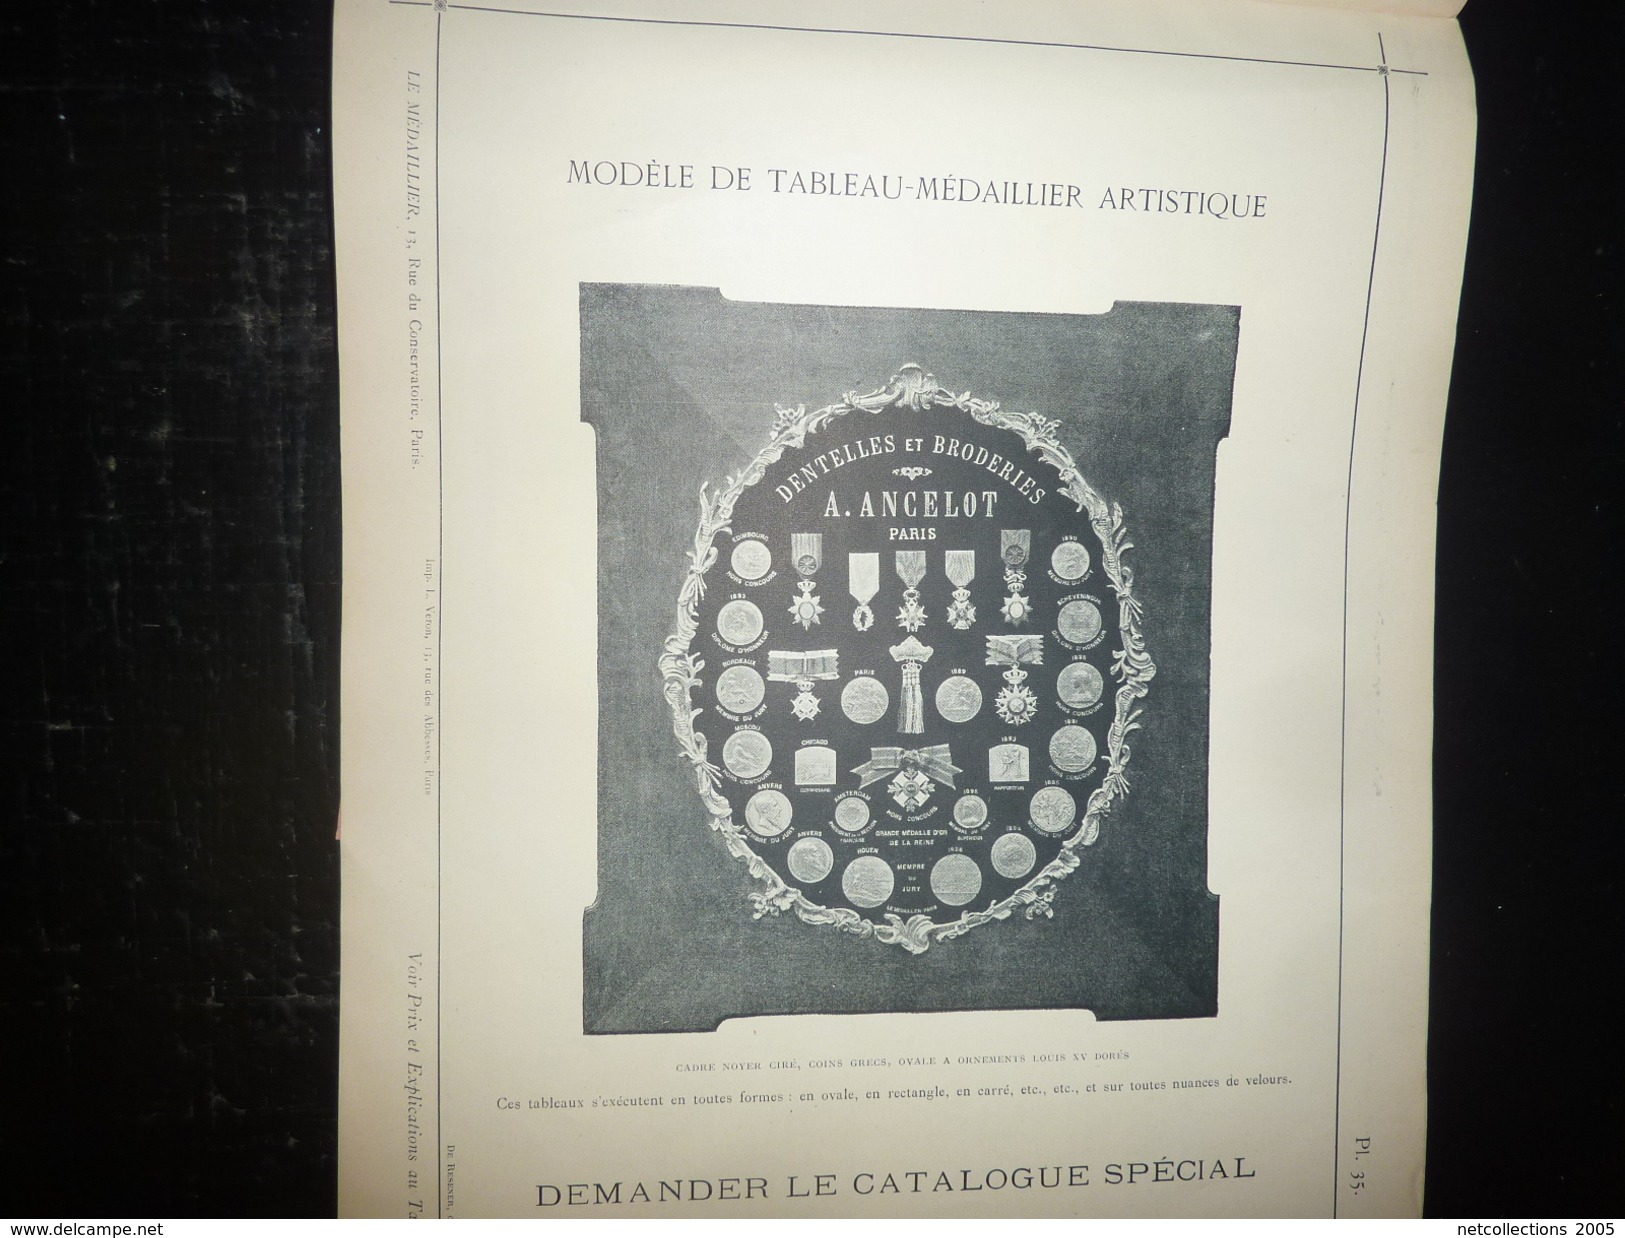 Magnifique catalogue médailles Artistiques " LE MEDAILLIER " édition et gravure de médailles d'art - PARIS 1903